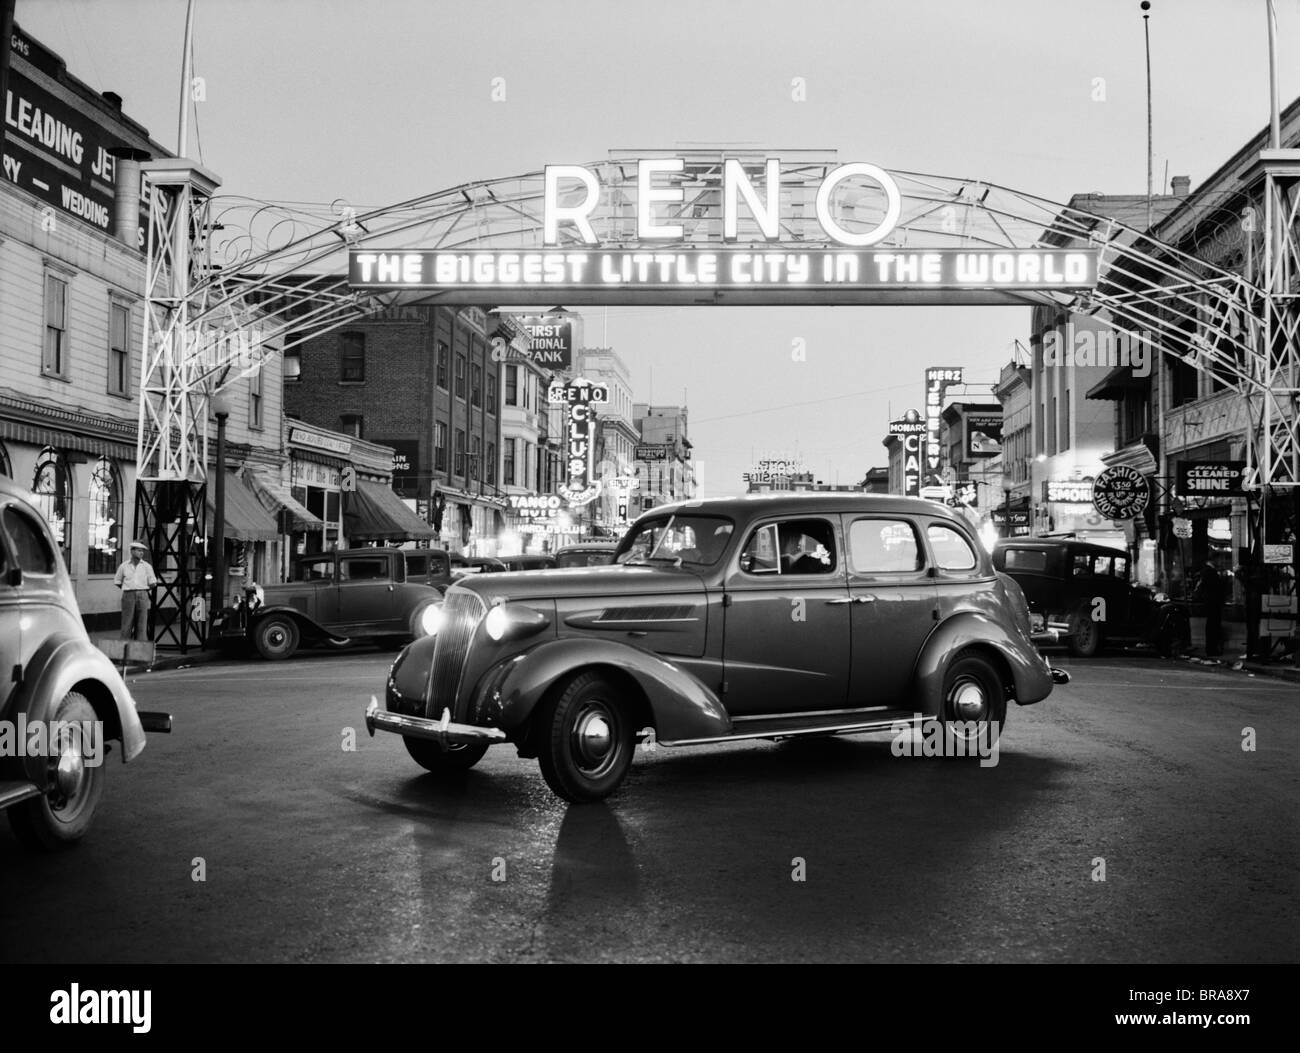 1930 NOTTE DI ARCO SUL MAIN STREET RENO NEVADA insegna al neon LA PIÙ GRANDE PICCOLA CITTÀ DEL MONDO Foto Stock